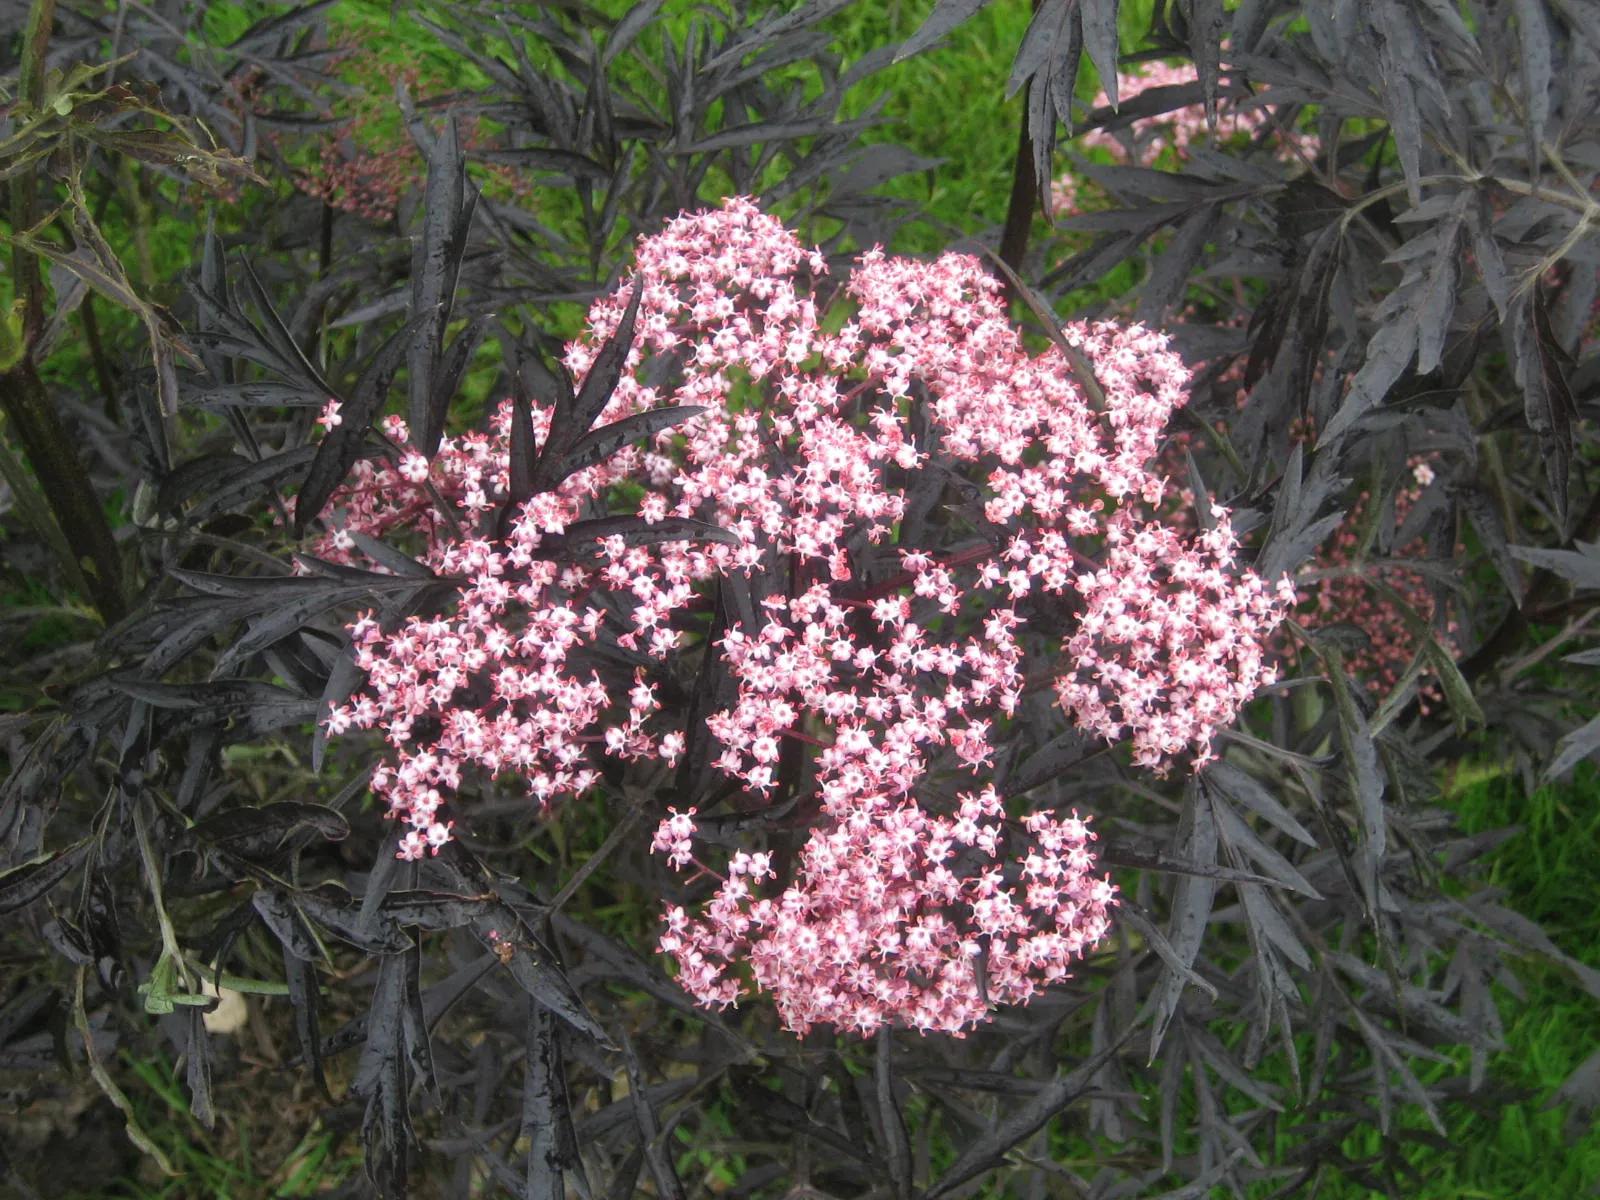 Pink flowers and dark foliage of Sambucus nigra